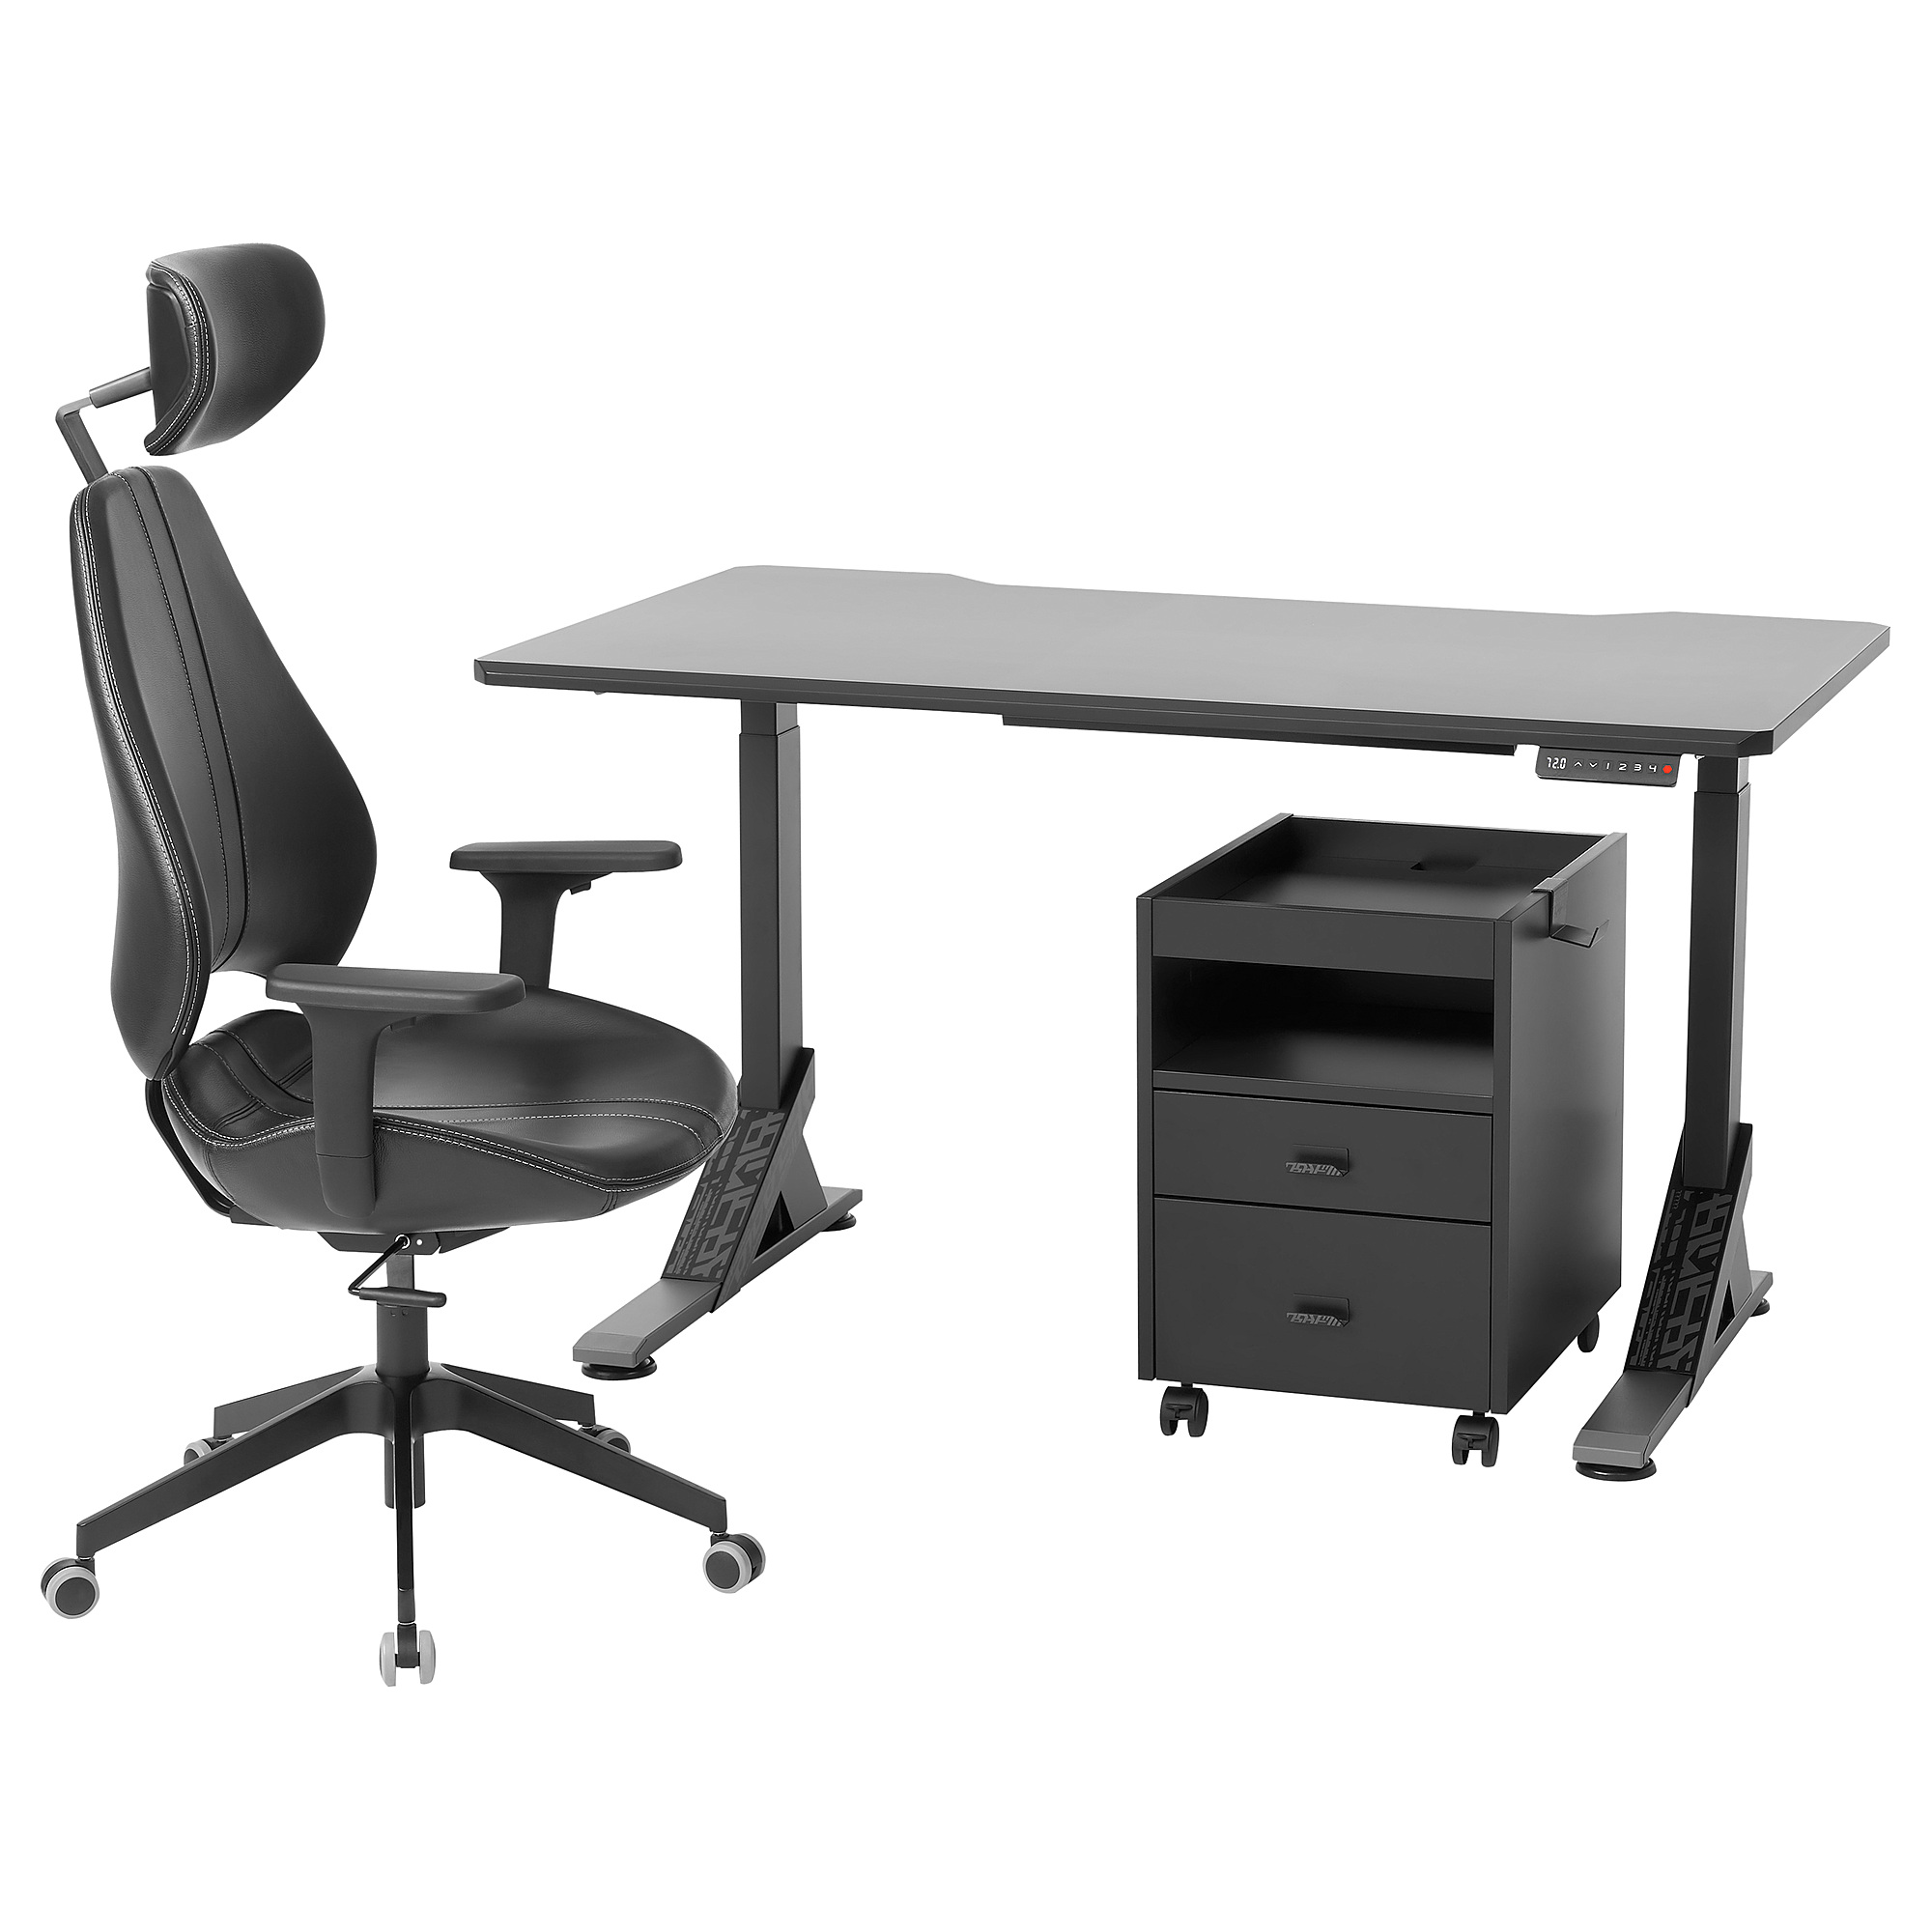 UPPSPEL/GRUPPSPEL desk, chair and drawer unit